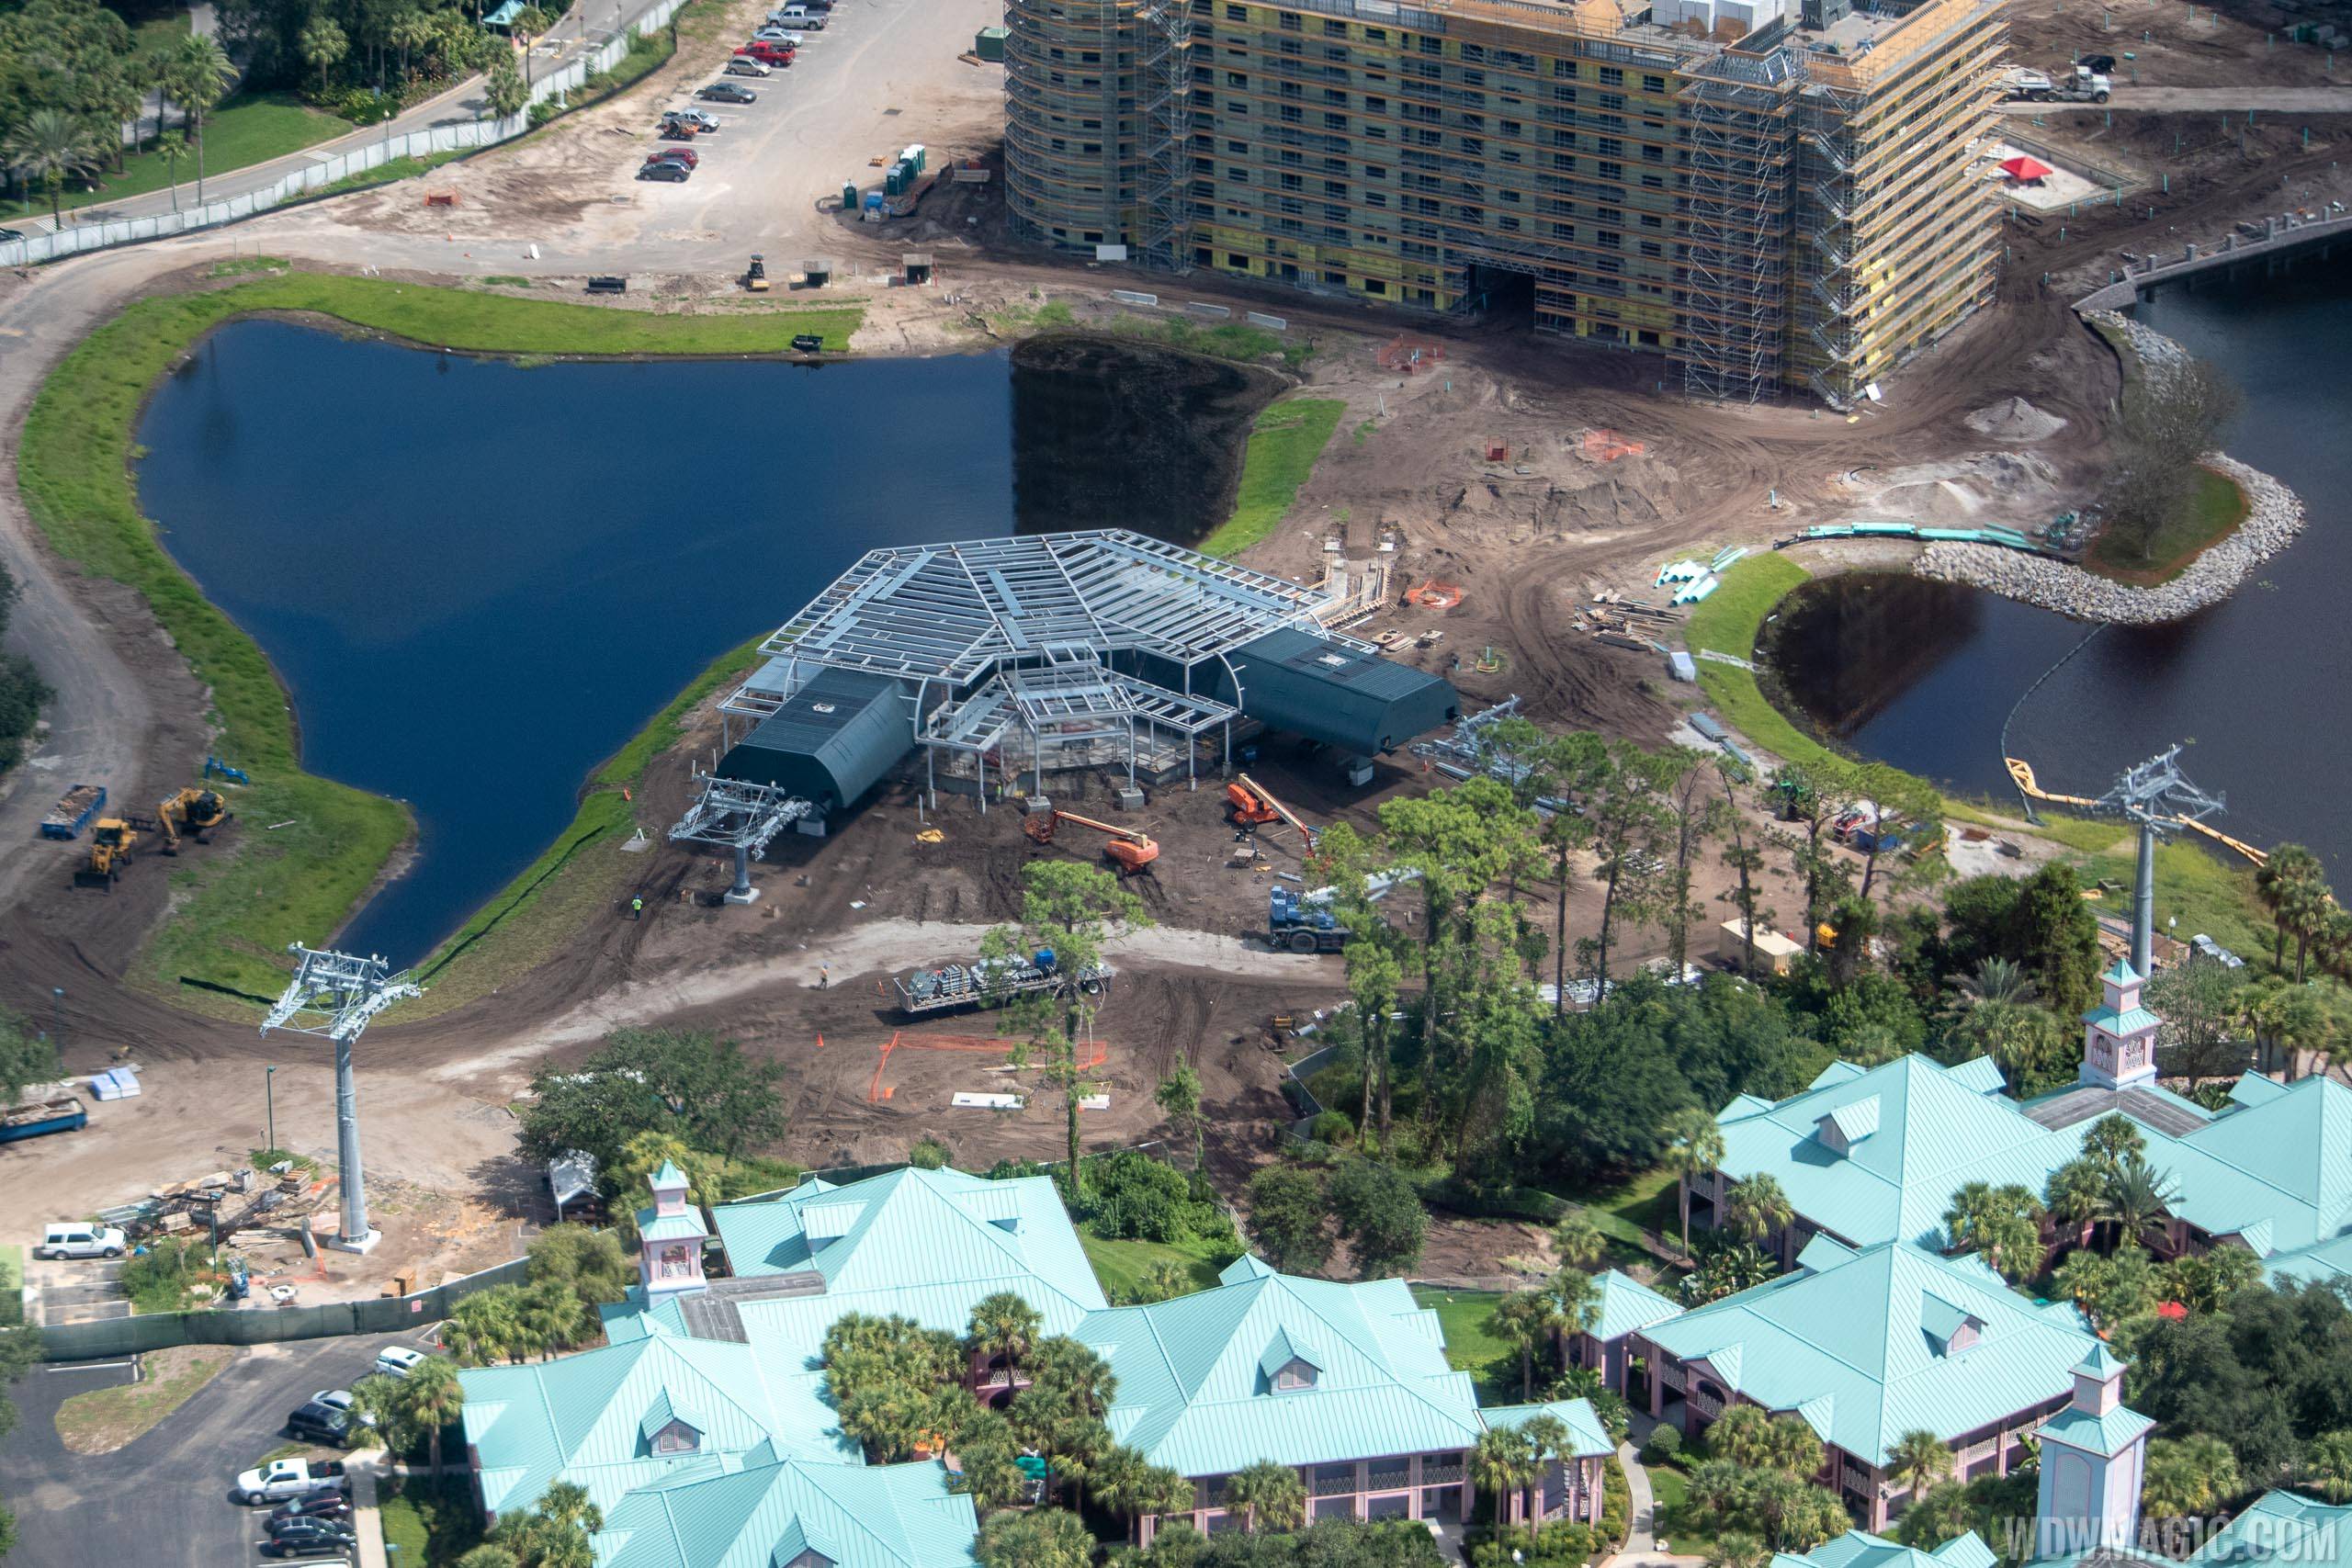 Disney Skyliner construction - Disney Riviera Resort